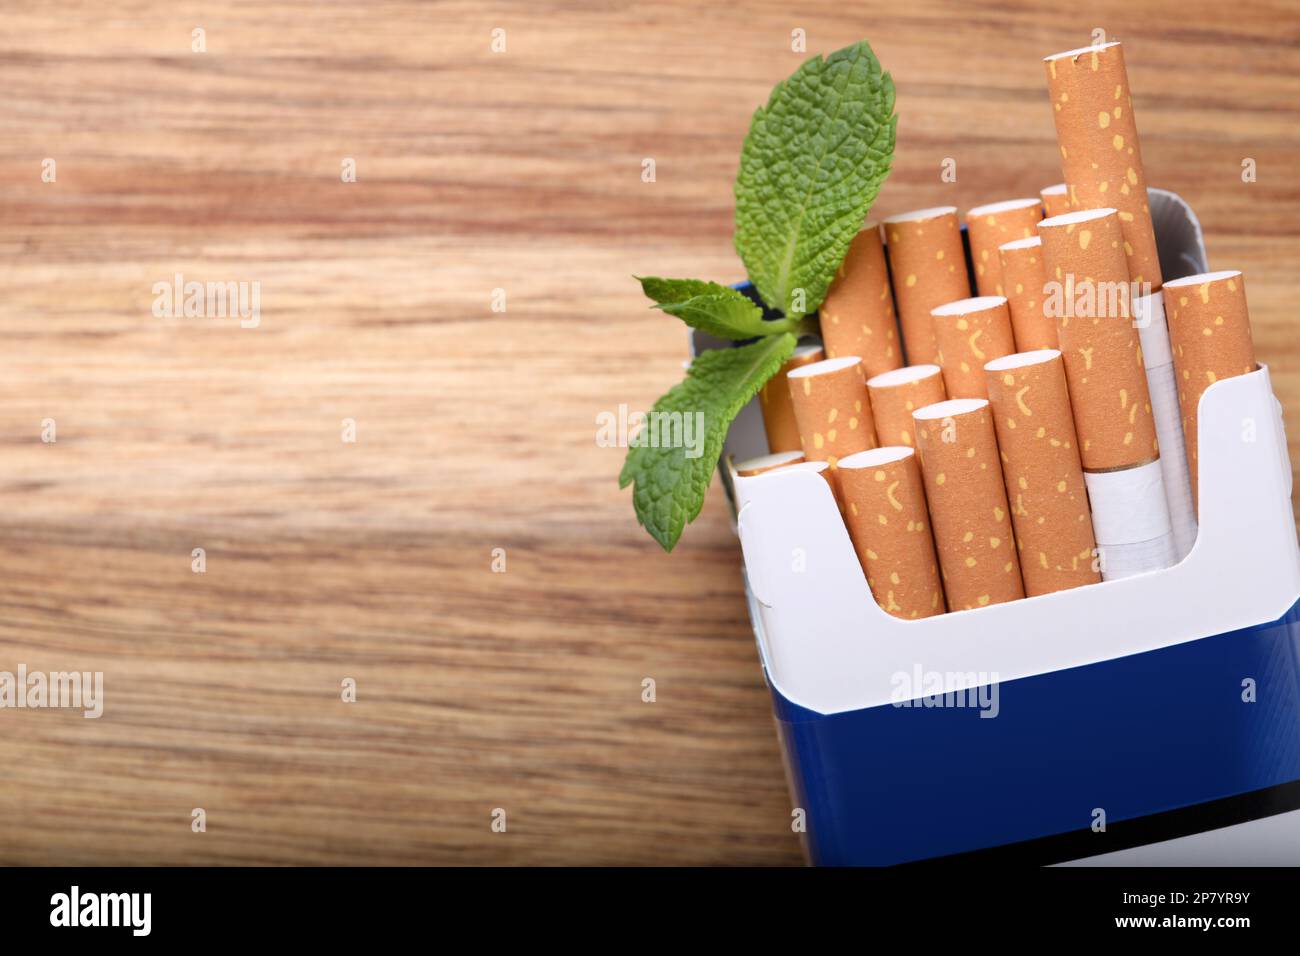 Paquet de cigarettes de menthol et feuilles de menthe sur table en bois, plat. Espace pour le texte Banque D'Images